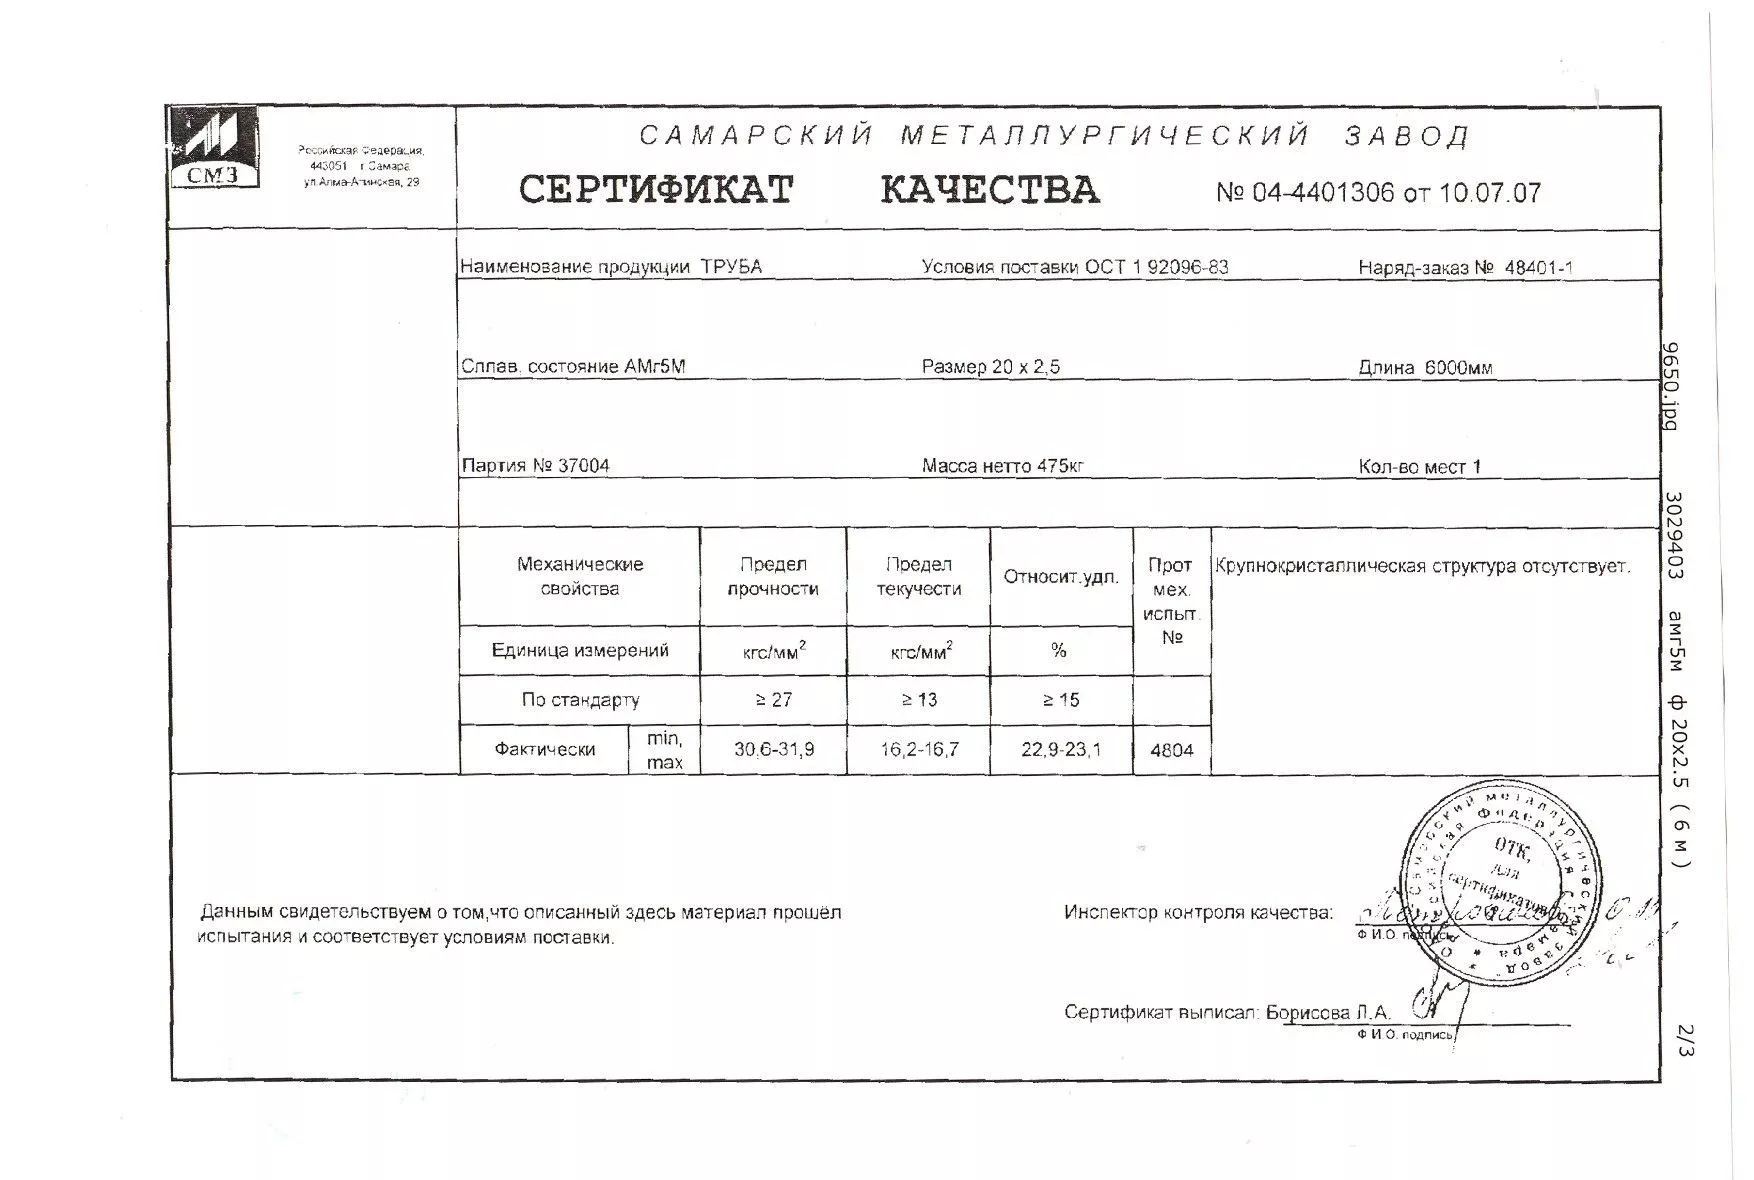 Сертификат качества на трубы алюминиевые 20х2,5 от 07-07